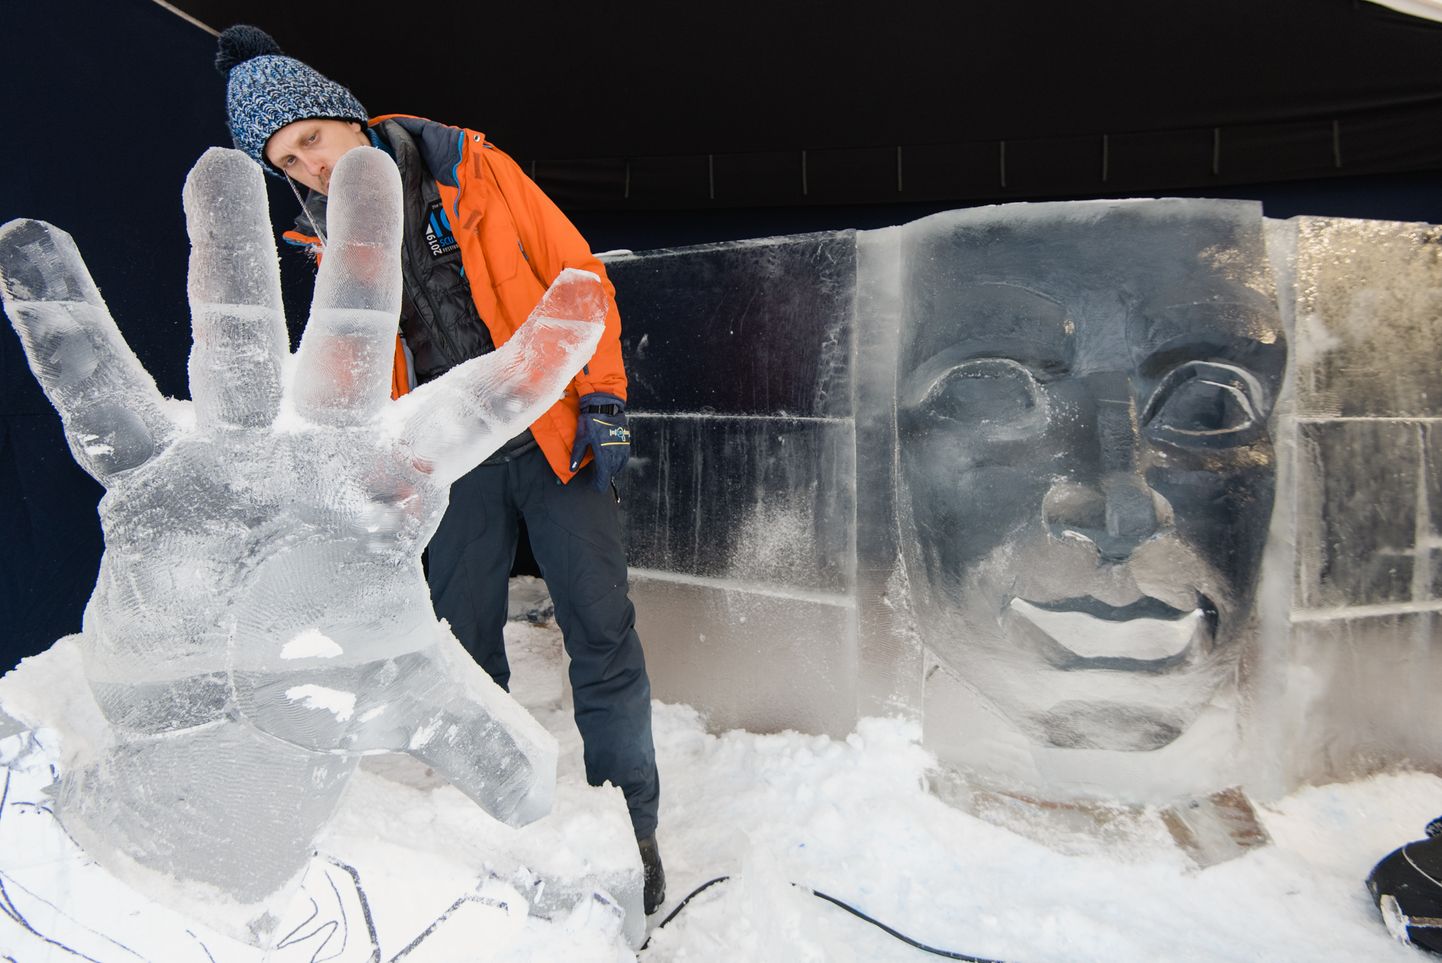 Starptautiskais Ledus skulptūru festivāls Jelgavā. Trešā diena